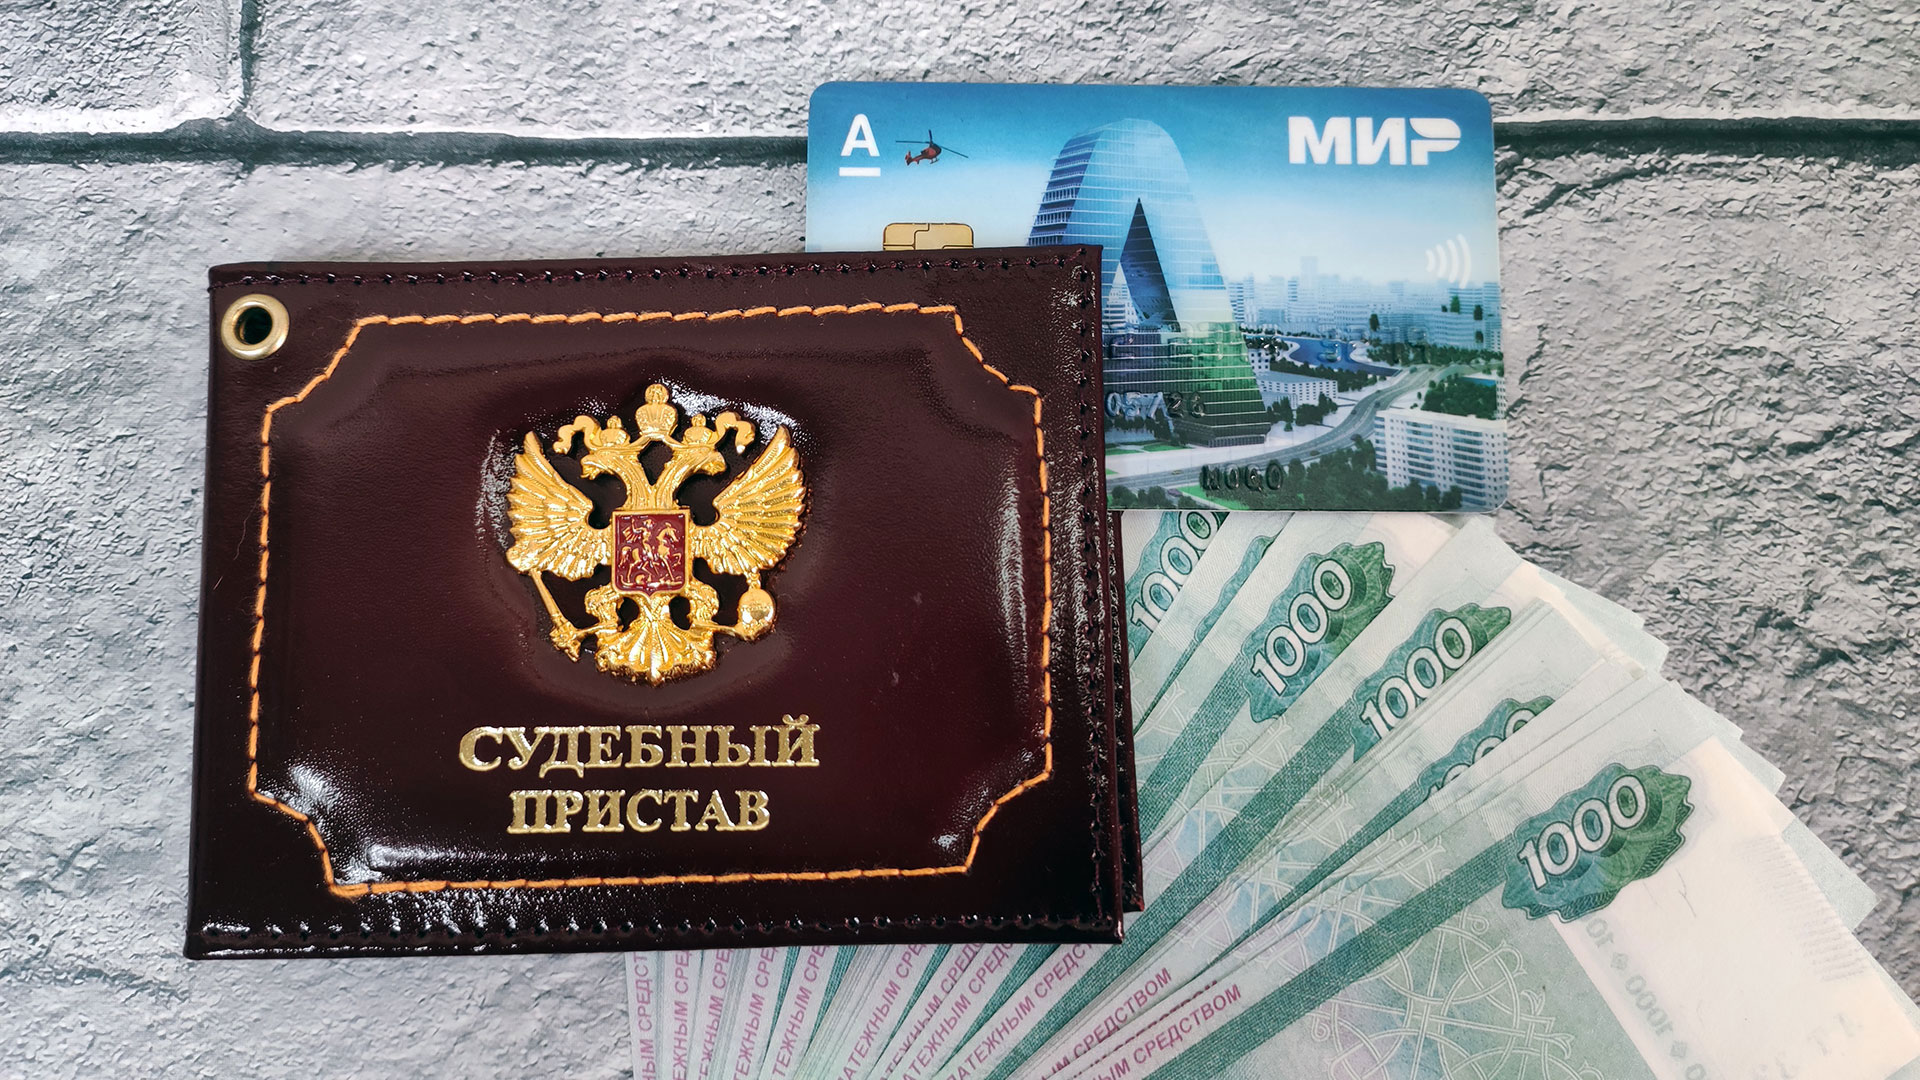 Судебные приставы по Республике Татарстан - узнать задолженность по фамилии